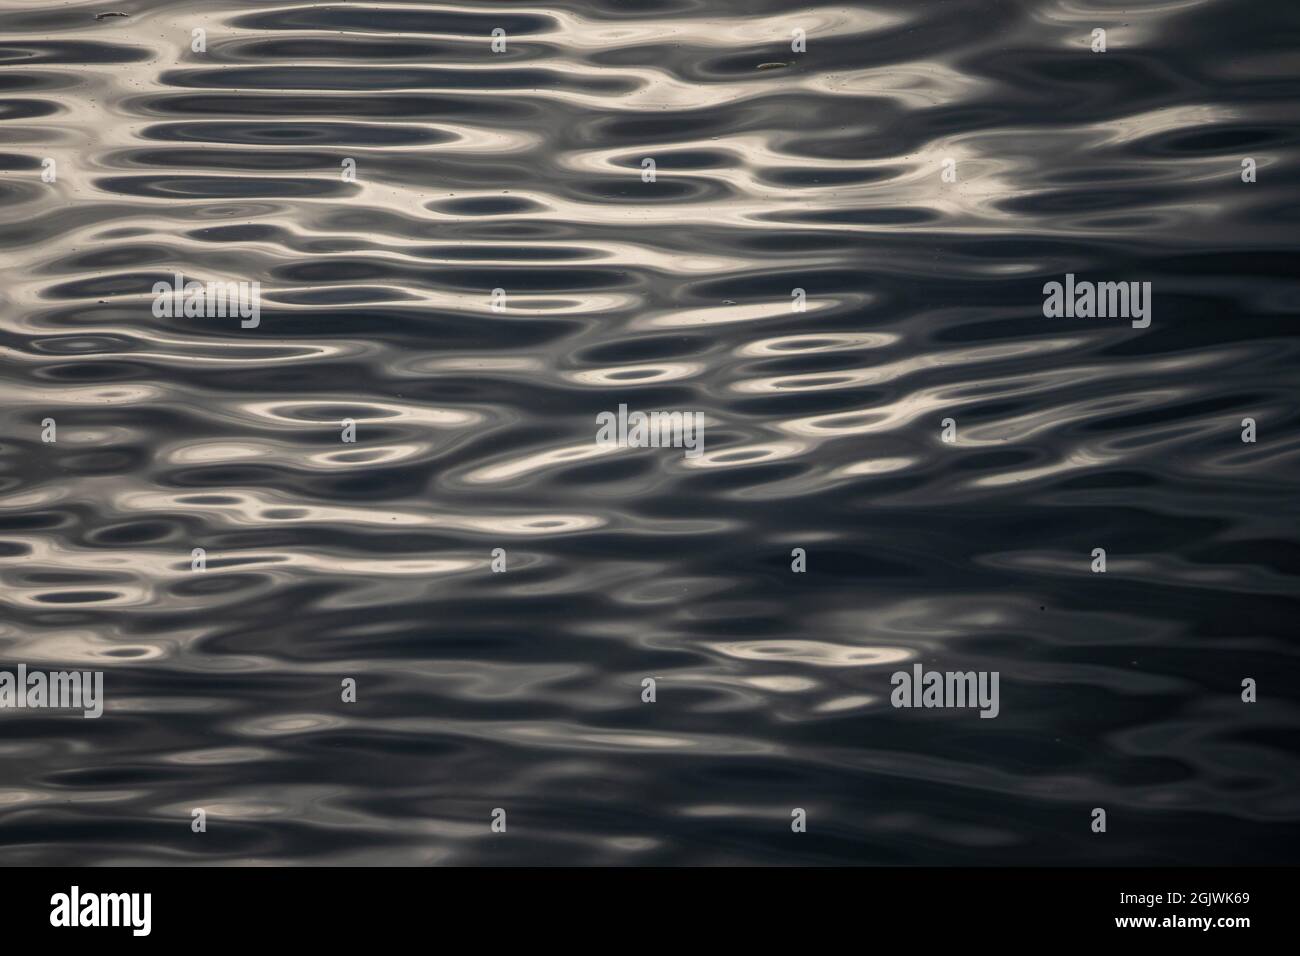 Wasser Textur. Wasser Reflexion Textur background.background, hochauflösende Hintergrund von dunklem Wasser oder Öl-Oberfläche. Ozeanoberfläche dunkle Natur zurück Stockfoto